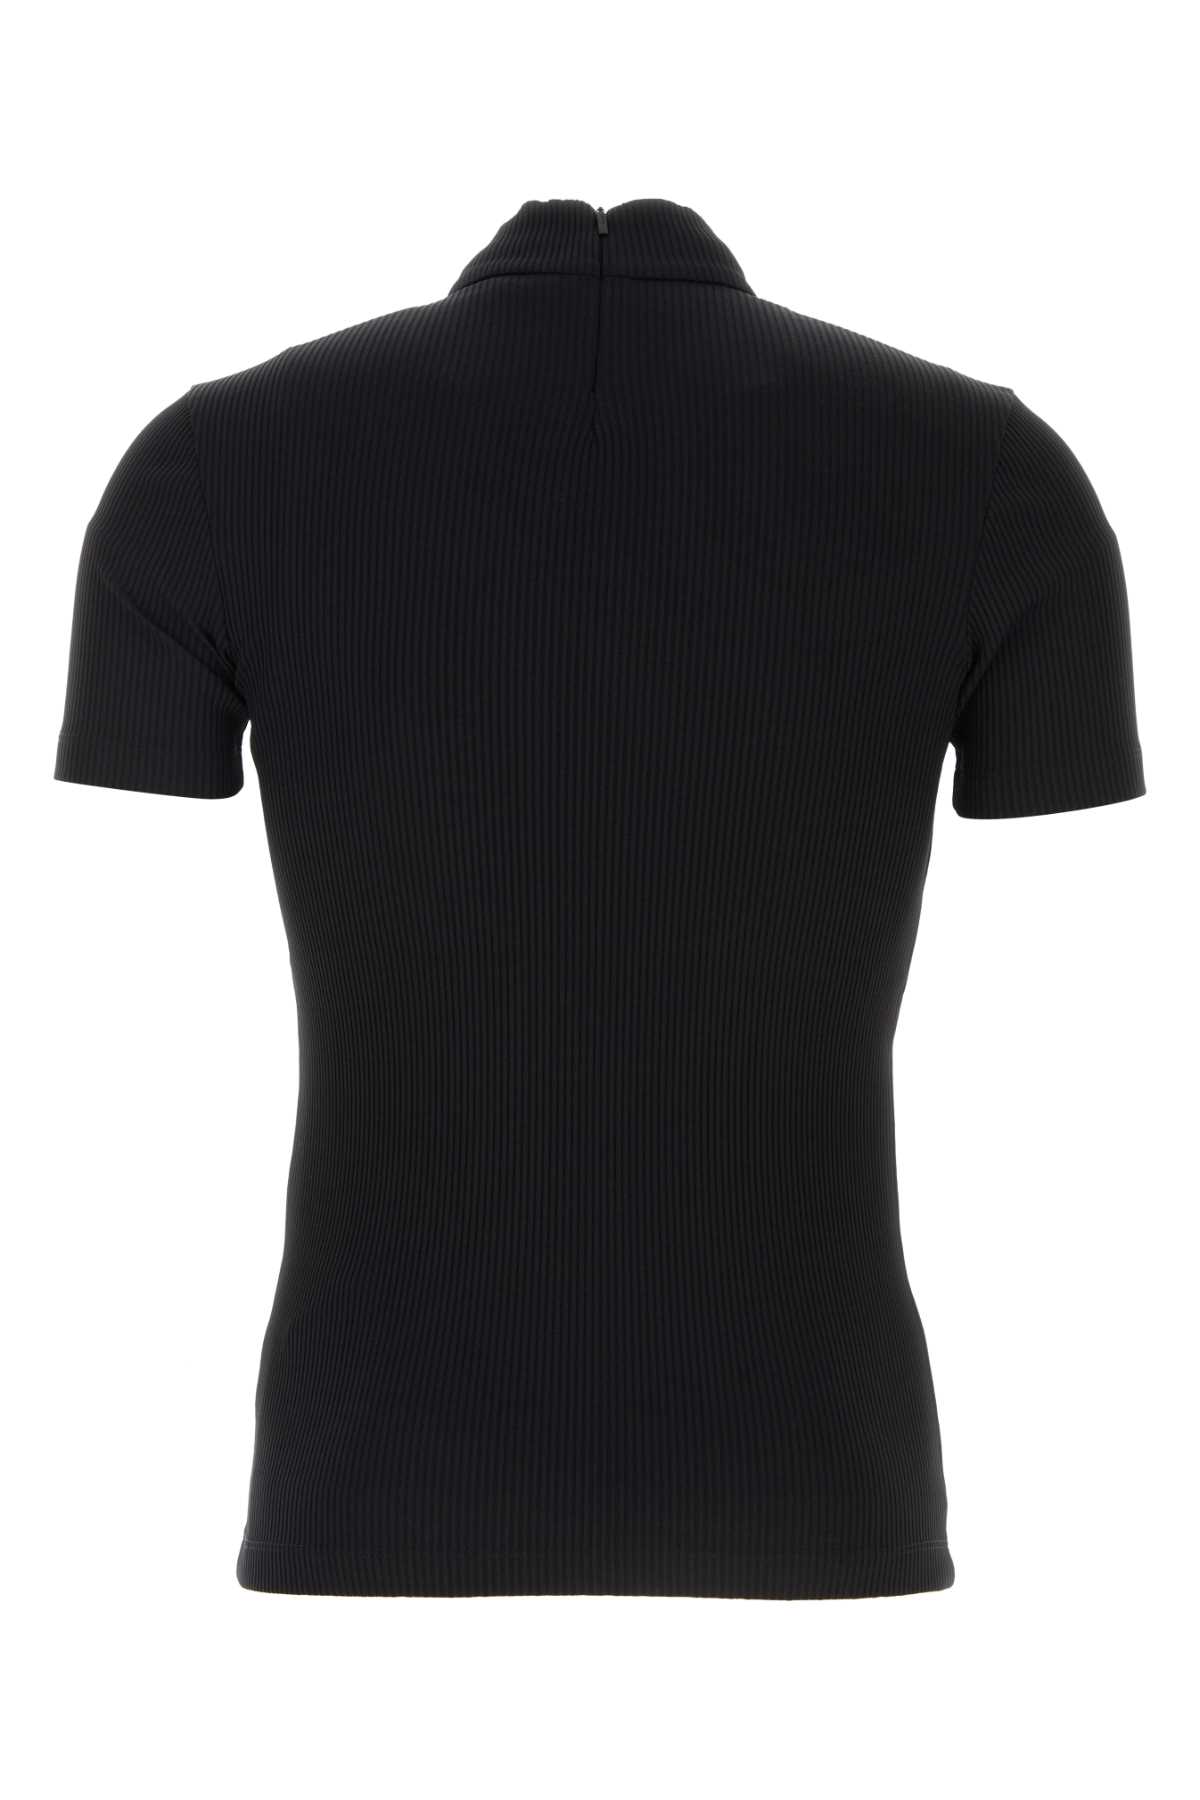 Fendi Black Stretch Nylon T-shirt